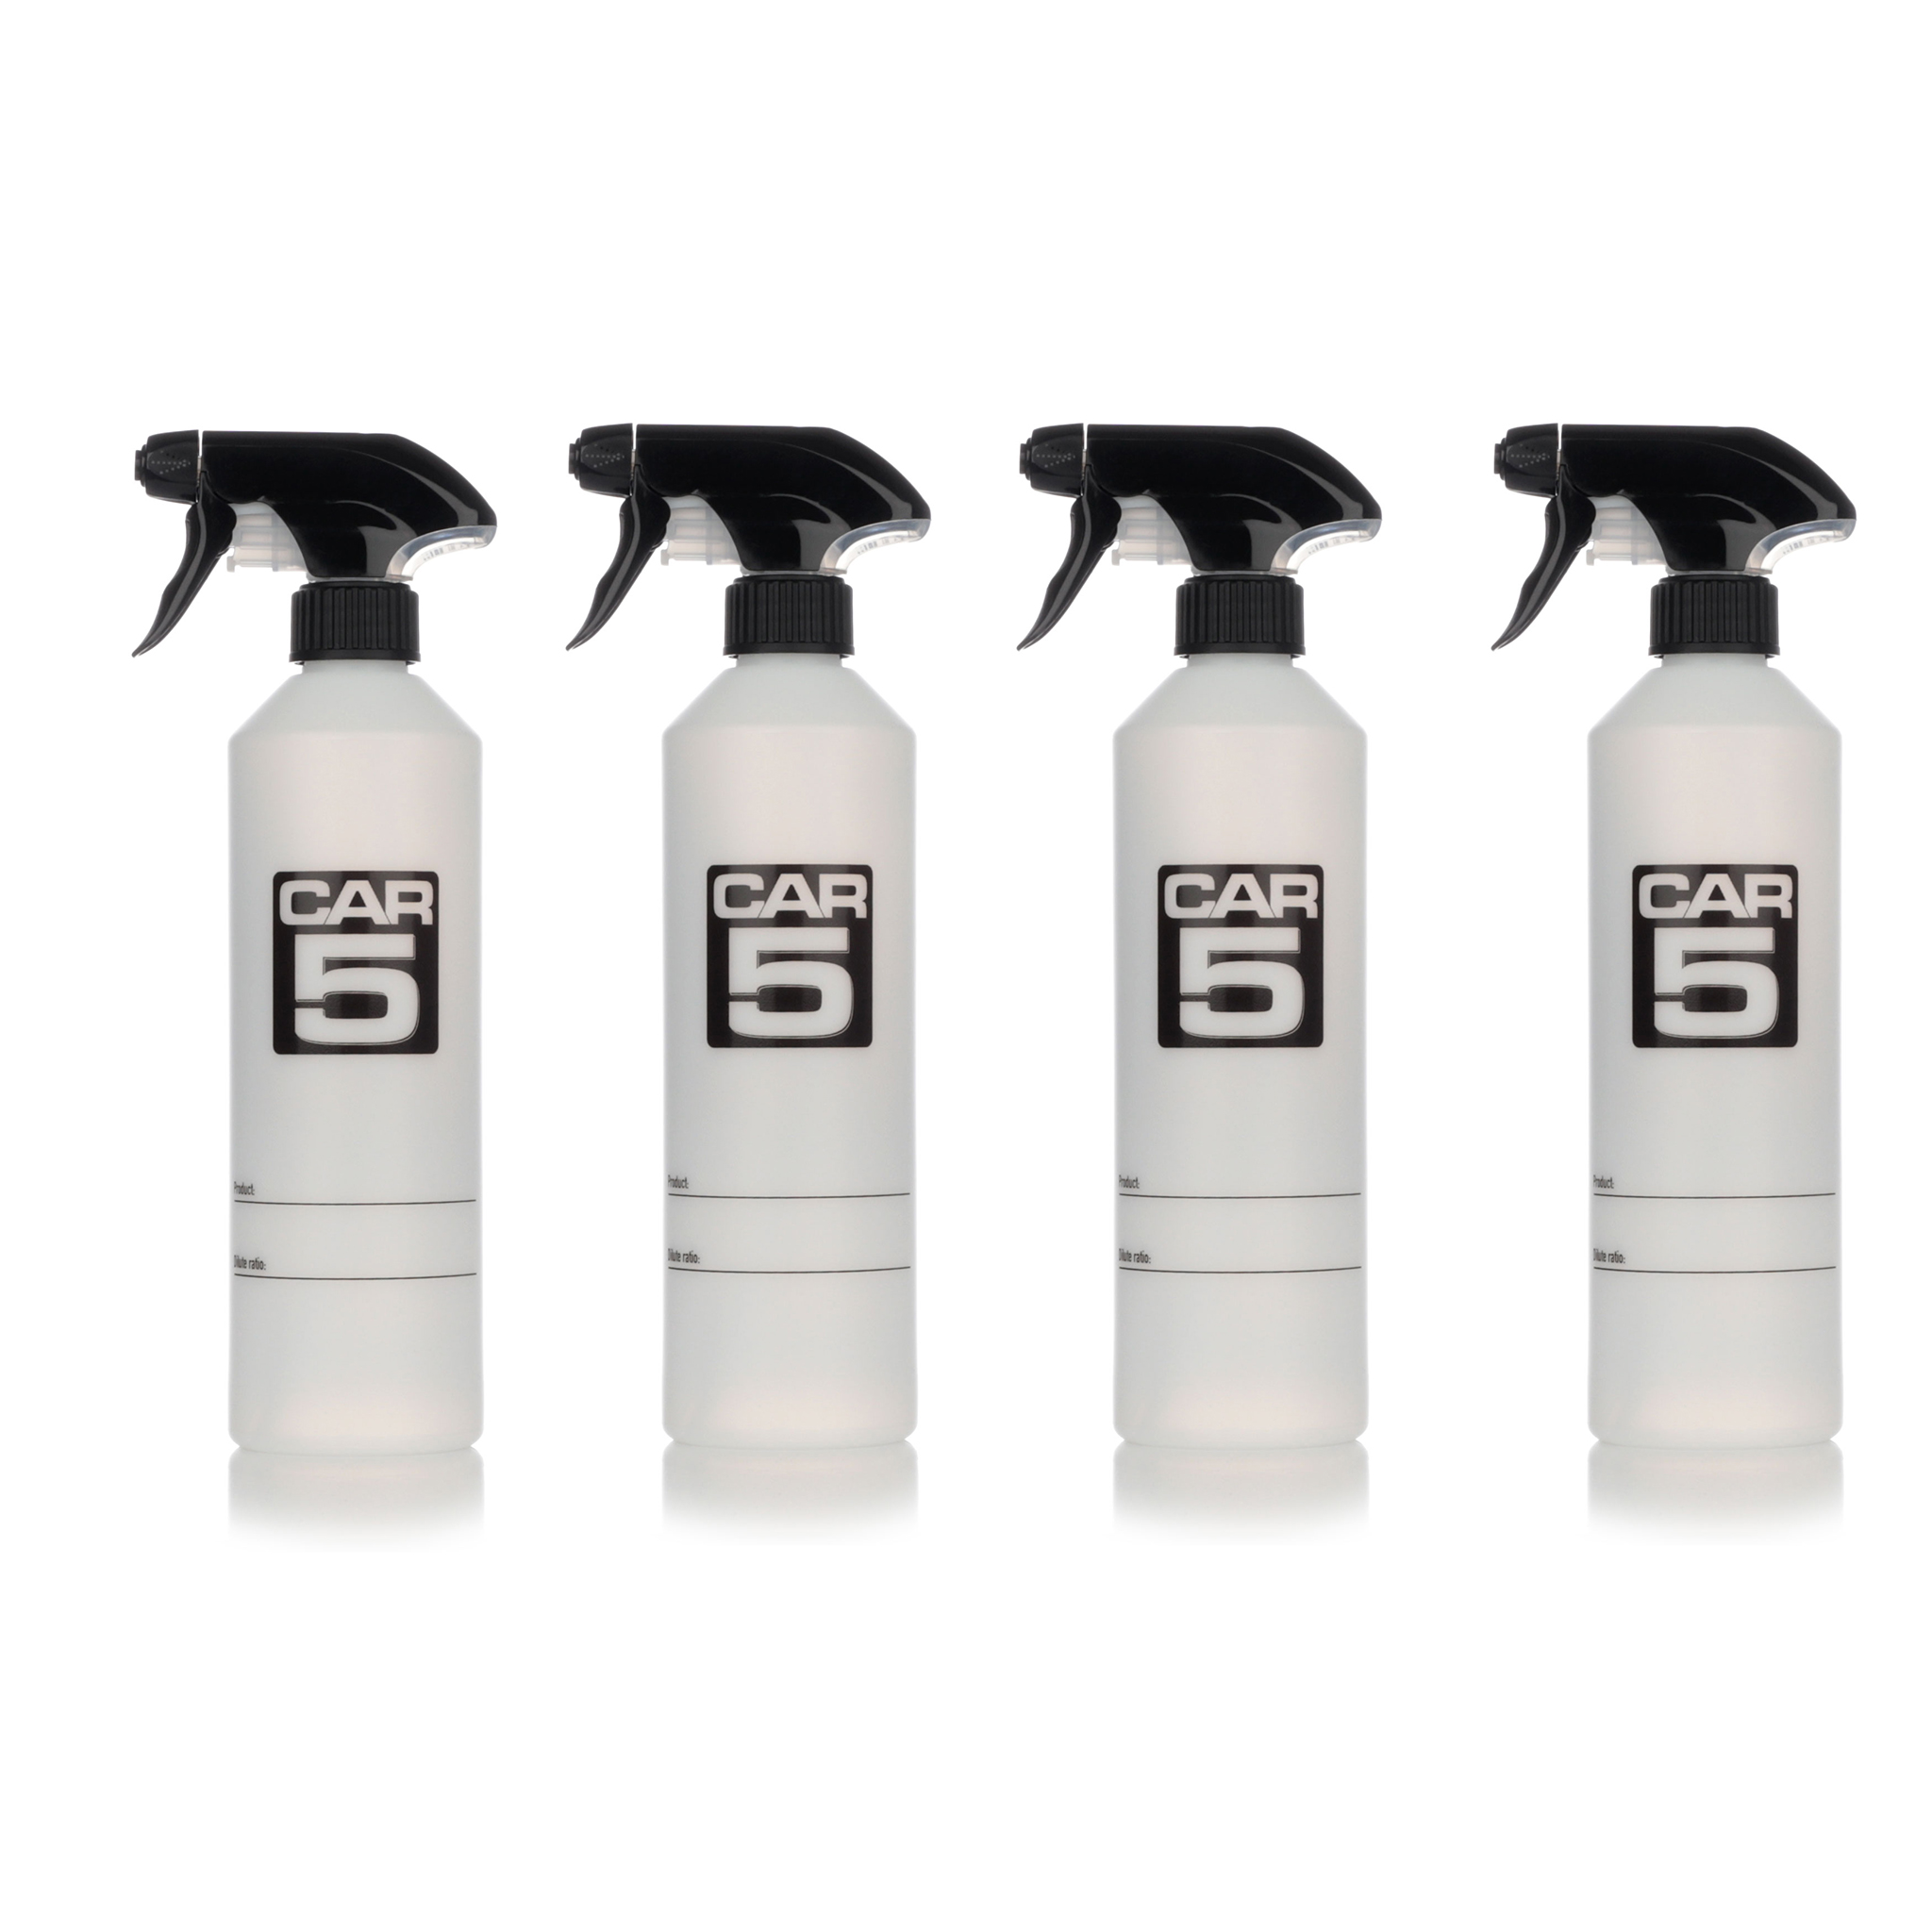 Sprayflaska CAR5 Dilute Bottle, 500 ml - Basic Trigger, 4 st